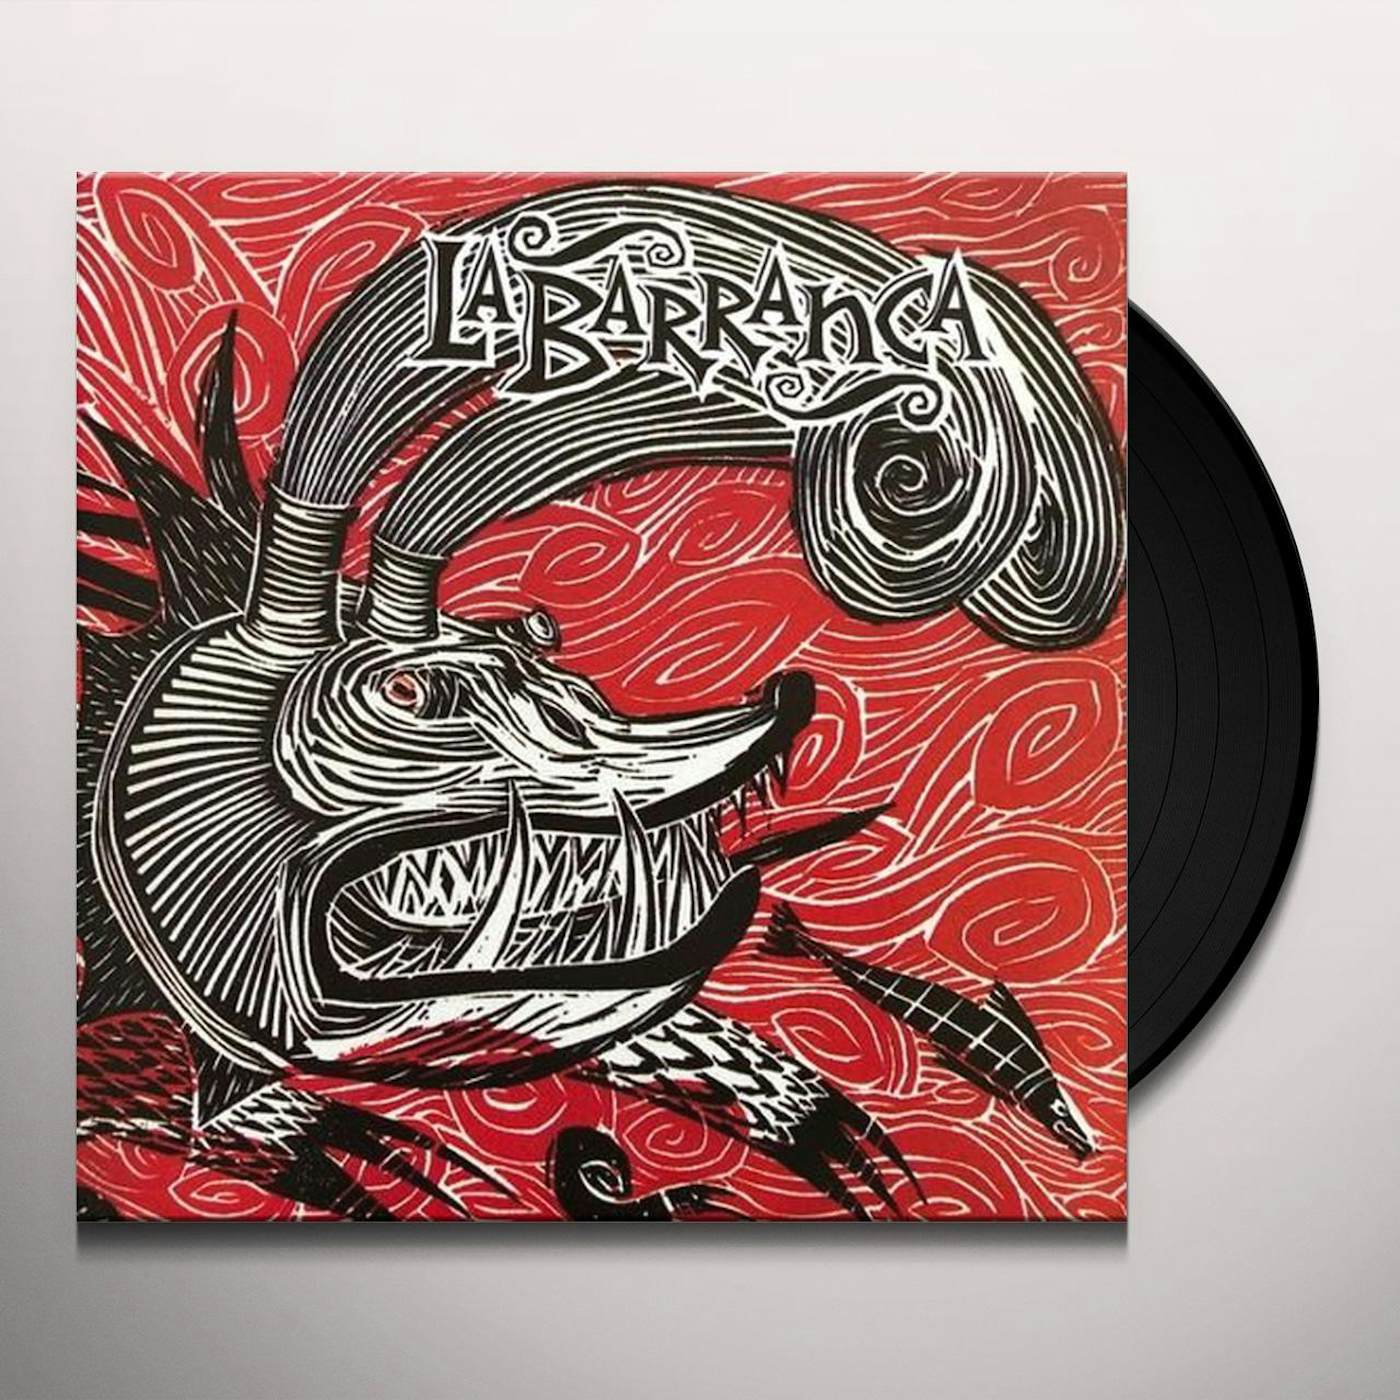 Barranca Tempestad Vinyl Record